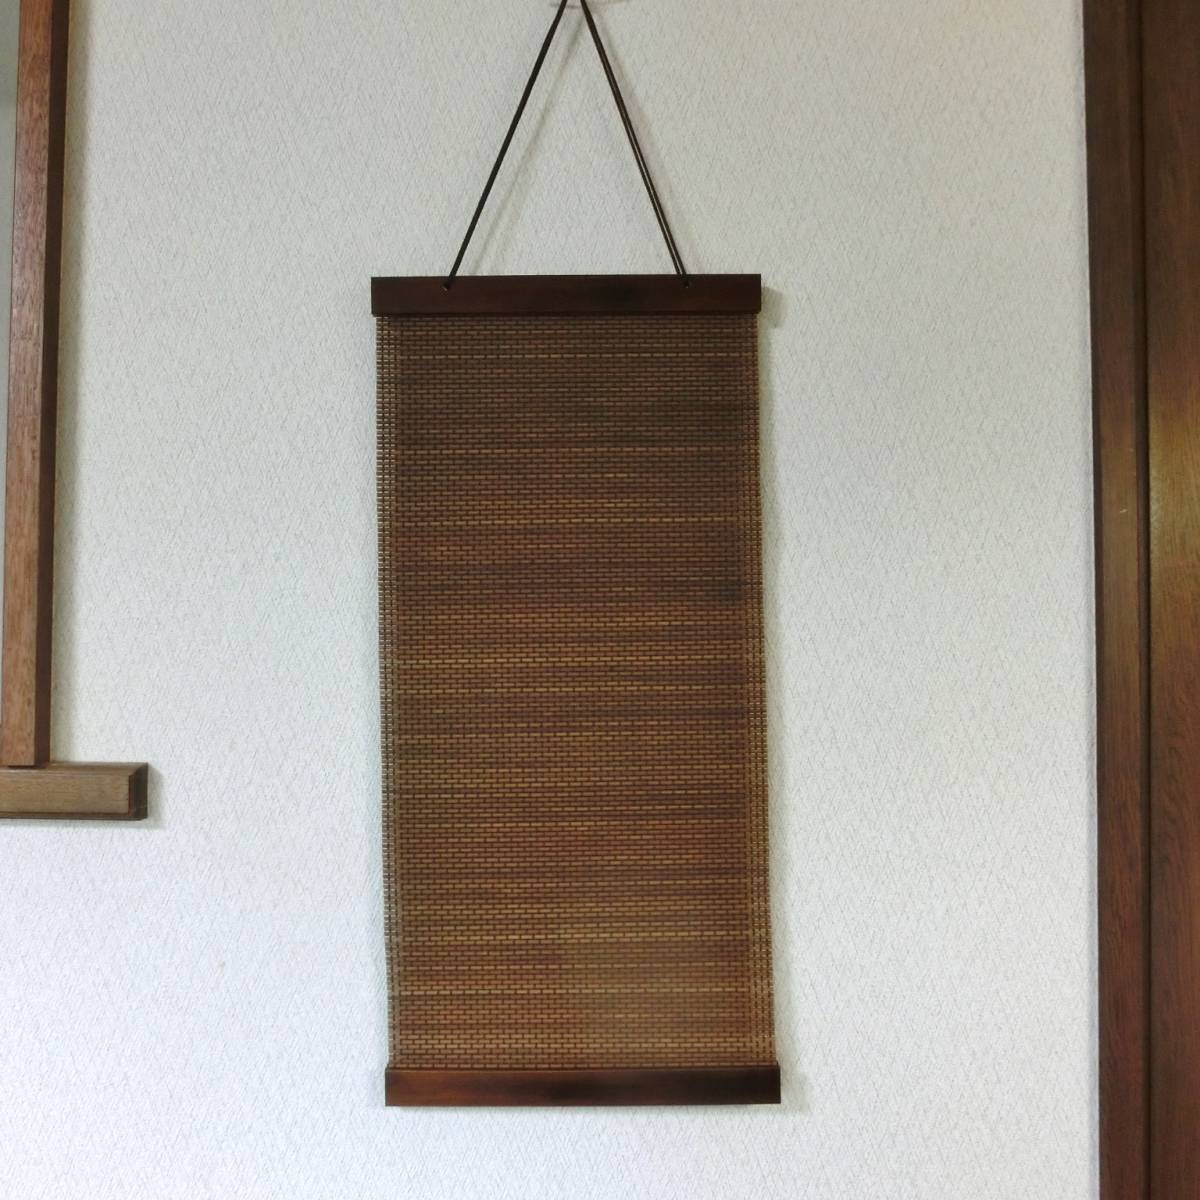 Характеристики древесины Гобелен с бамбуком Новый неиспользованный Стильный бамбуковый гобелен в японском стиле 17 Ширина 25, 5 см Длина 54 см, Изделия ручной работы, интерьер, разные товары, панель, Гобелен